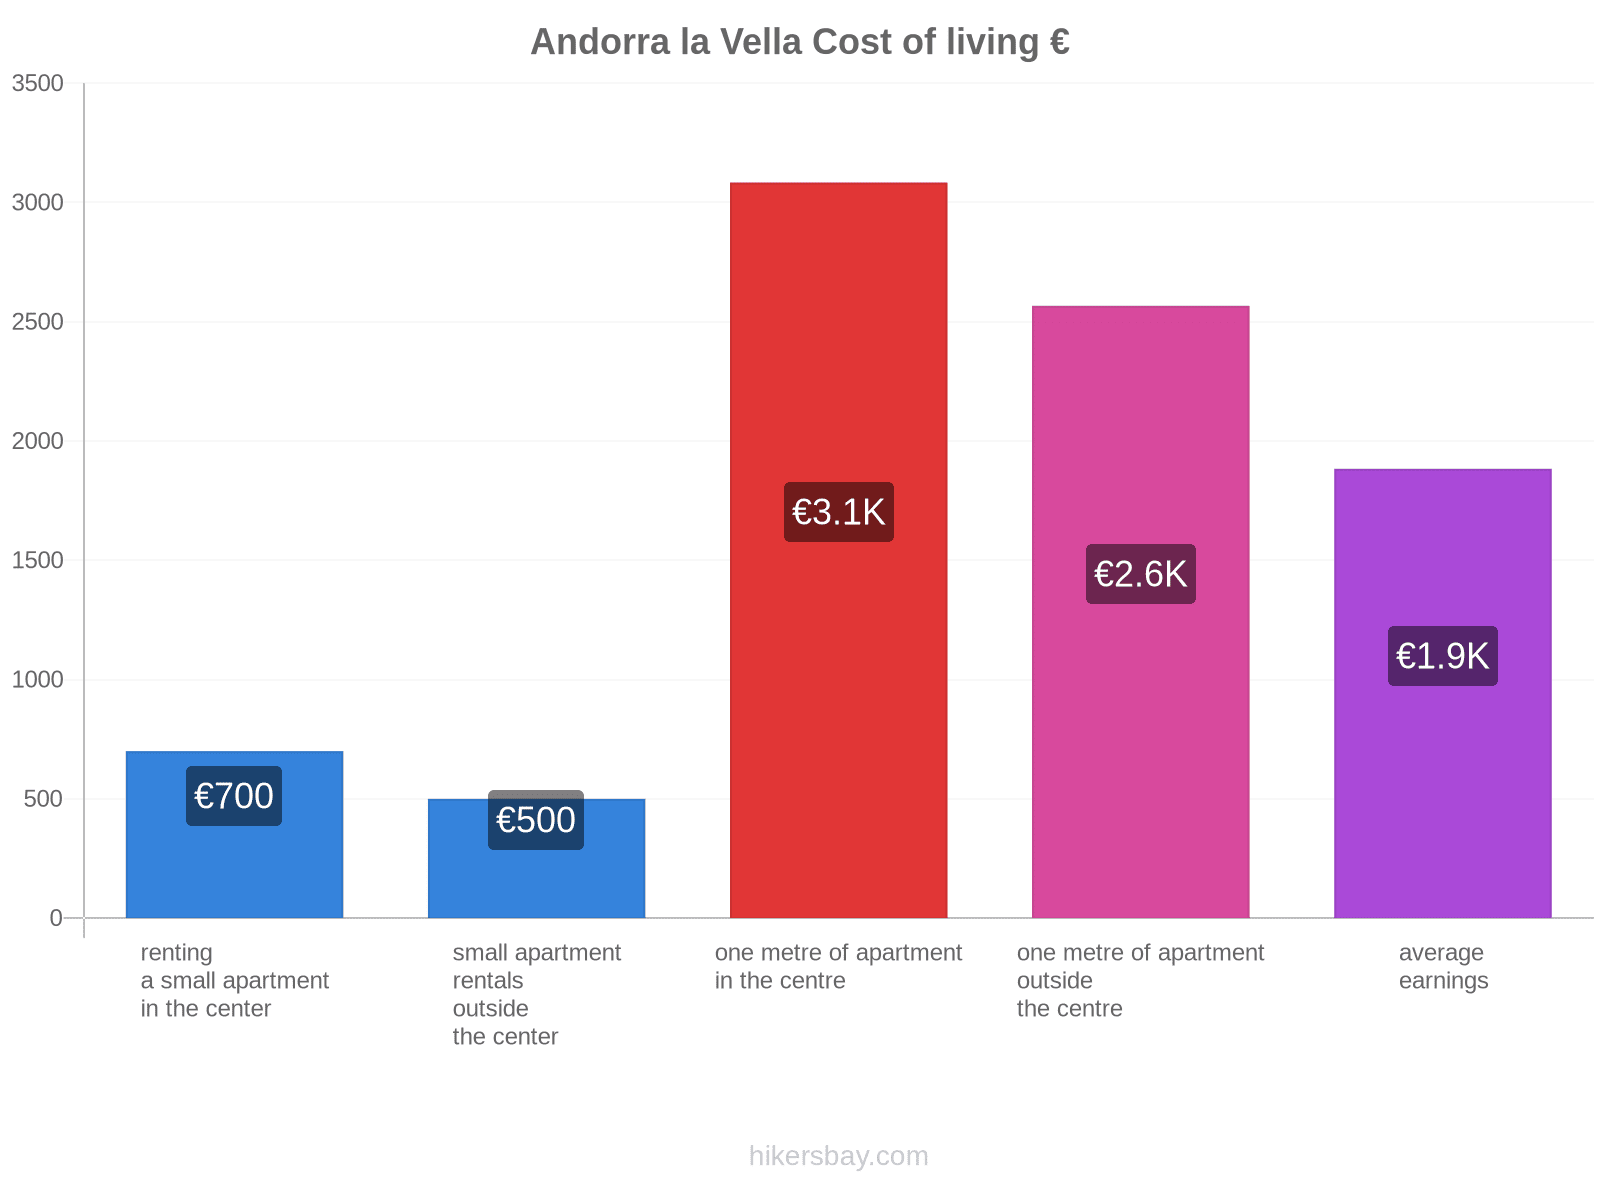 Andorra la Vella cost of living hikersbay.com